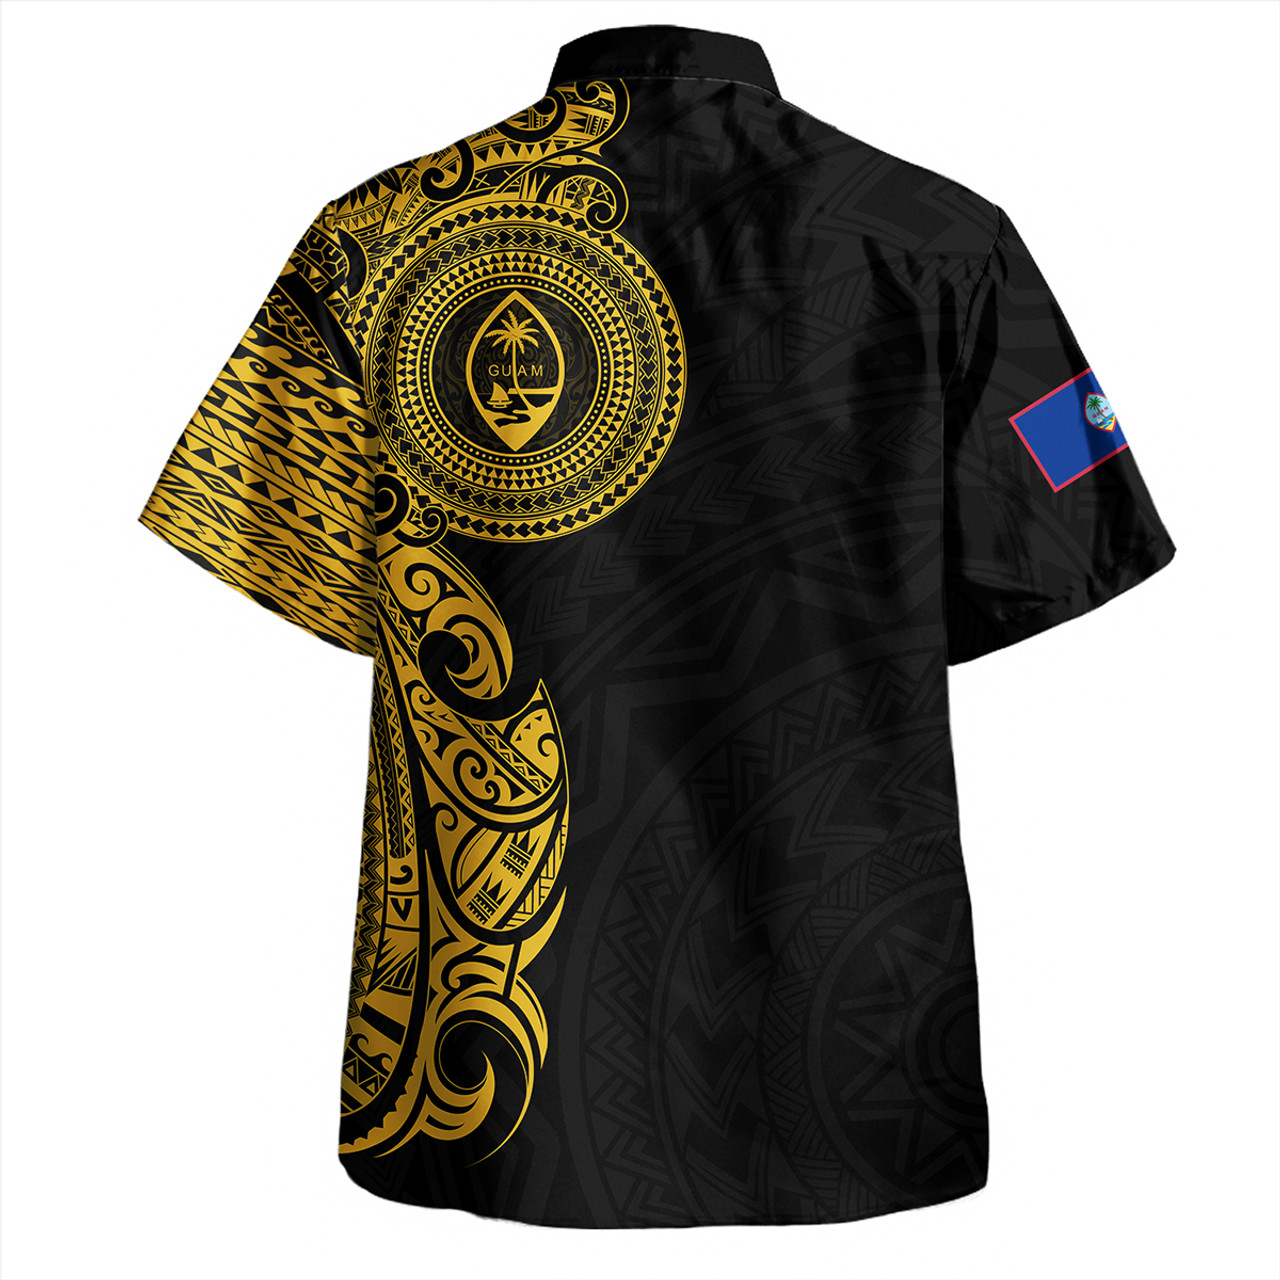 Guam Hawaiian Shirt Custom Polynesian Half Sleeve Gold Tattoo With Seal Black